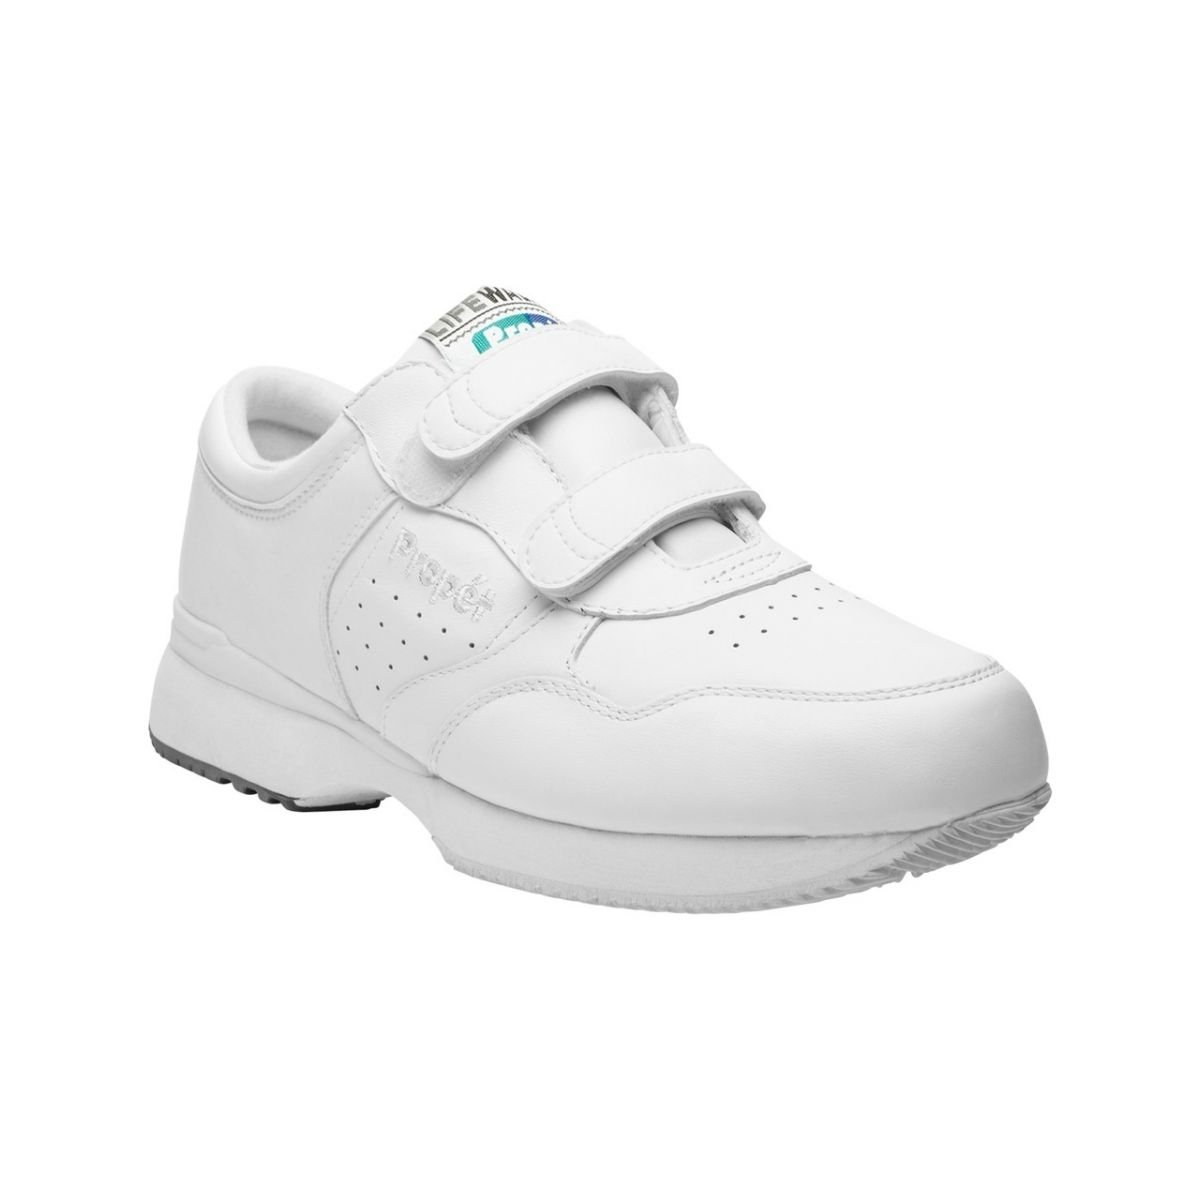 Propet Men's Life Walker Strap Shoe White - M3705WHT WHITE - WHITE, 17 XX-Wide